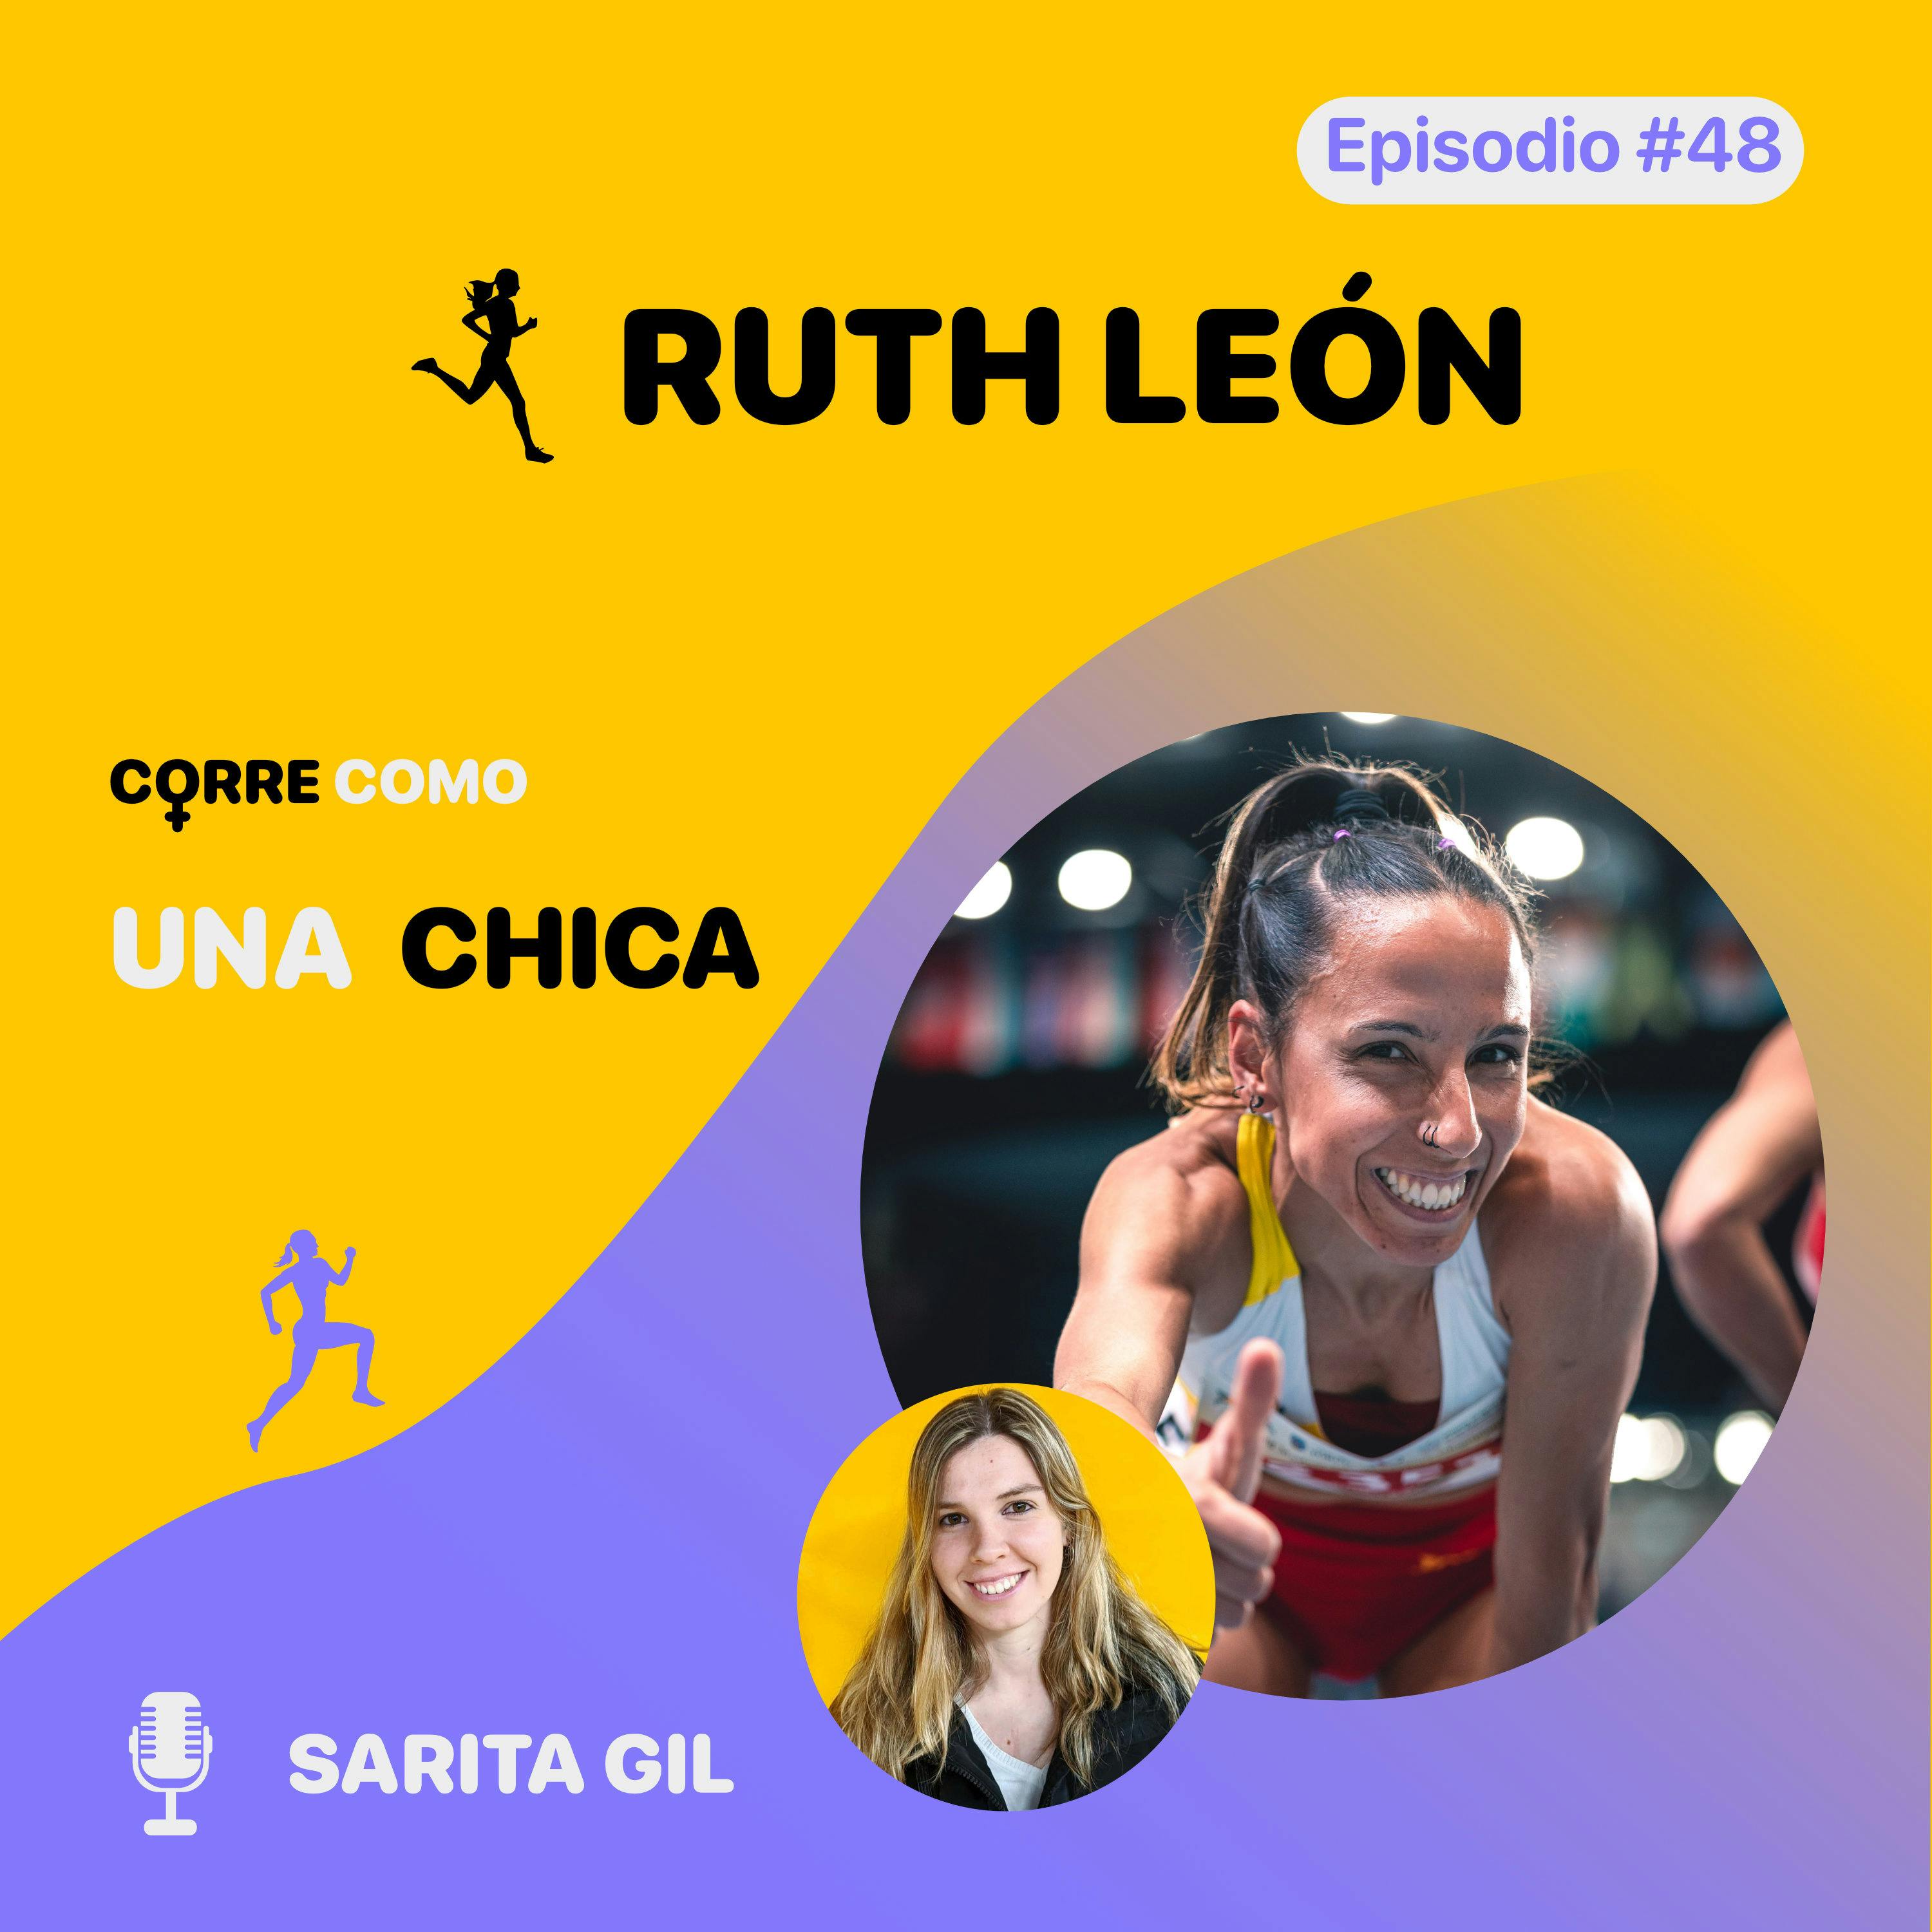 imagen de portada de: Episodio #48 - Ruth León: “Arriesgar” 